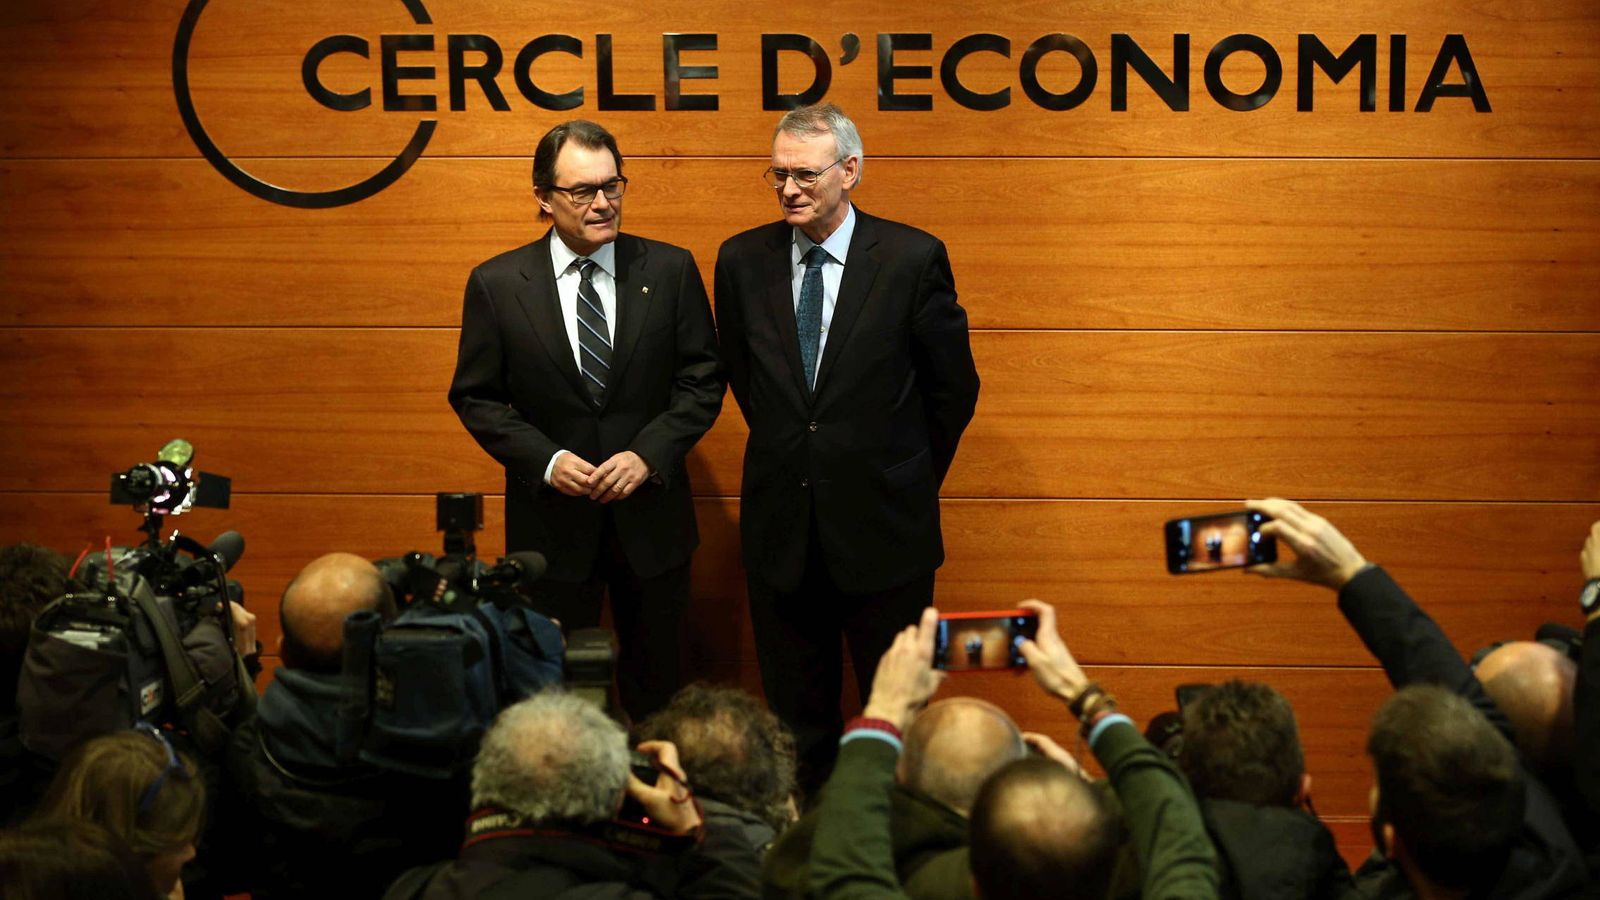 Foto: El expresidente de la Generalitat, Artur Mas, junto a Antón Costas, presidente del Círculo de Economía. (EFE)